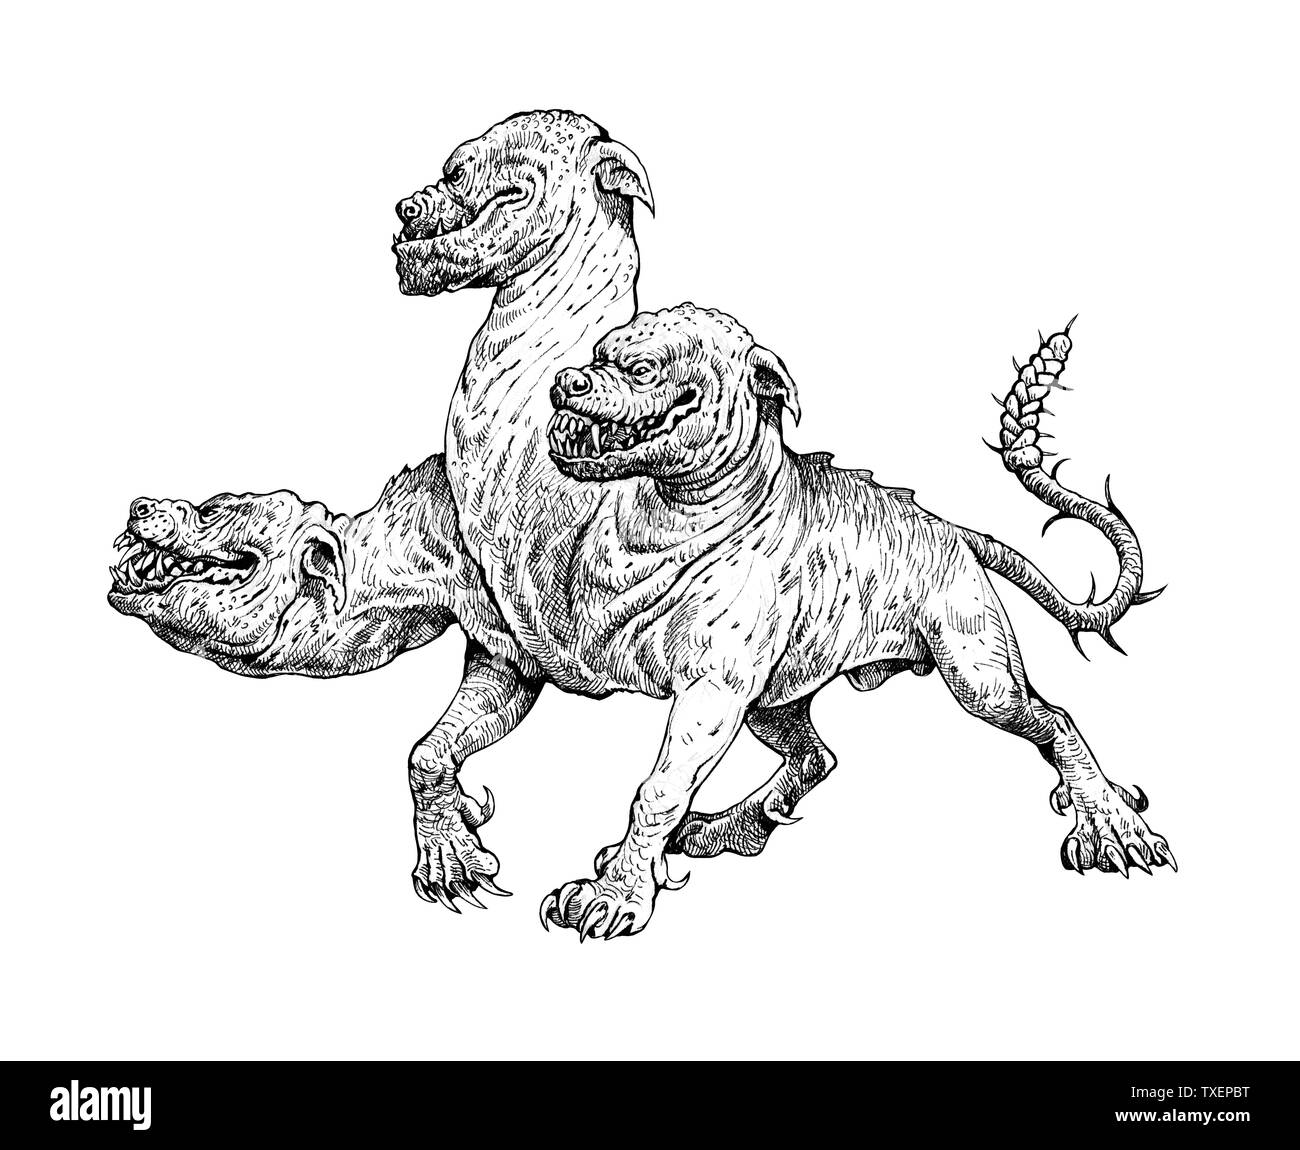 Multi headed dog Cerberus drawing. Hound of Hades. Greek mythology illustration. Stock Photo